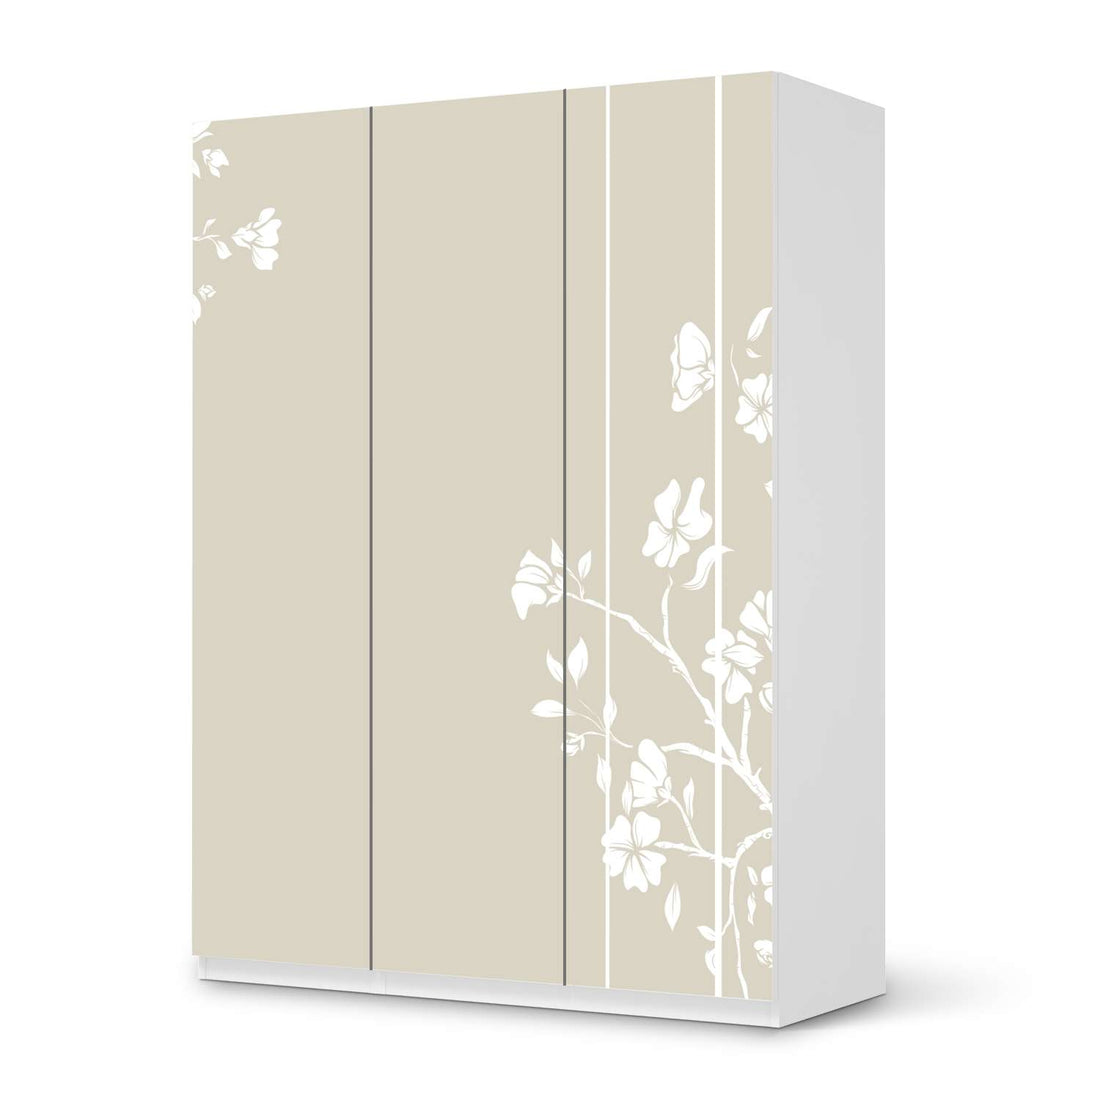 Folie für Möbel Florals Plain 3 - IKEA Pax Schrank 201 cm Höhe - 3 Türen - weiss